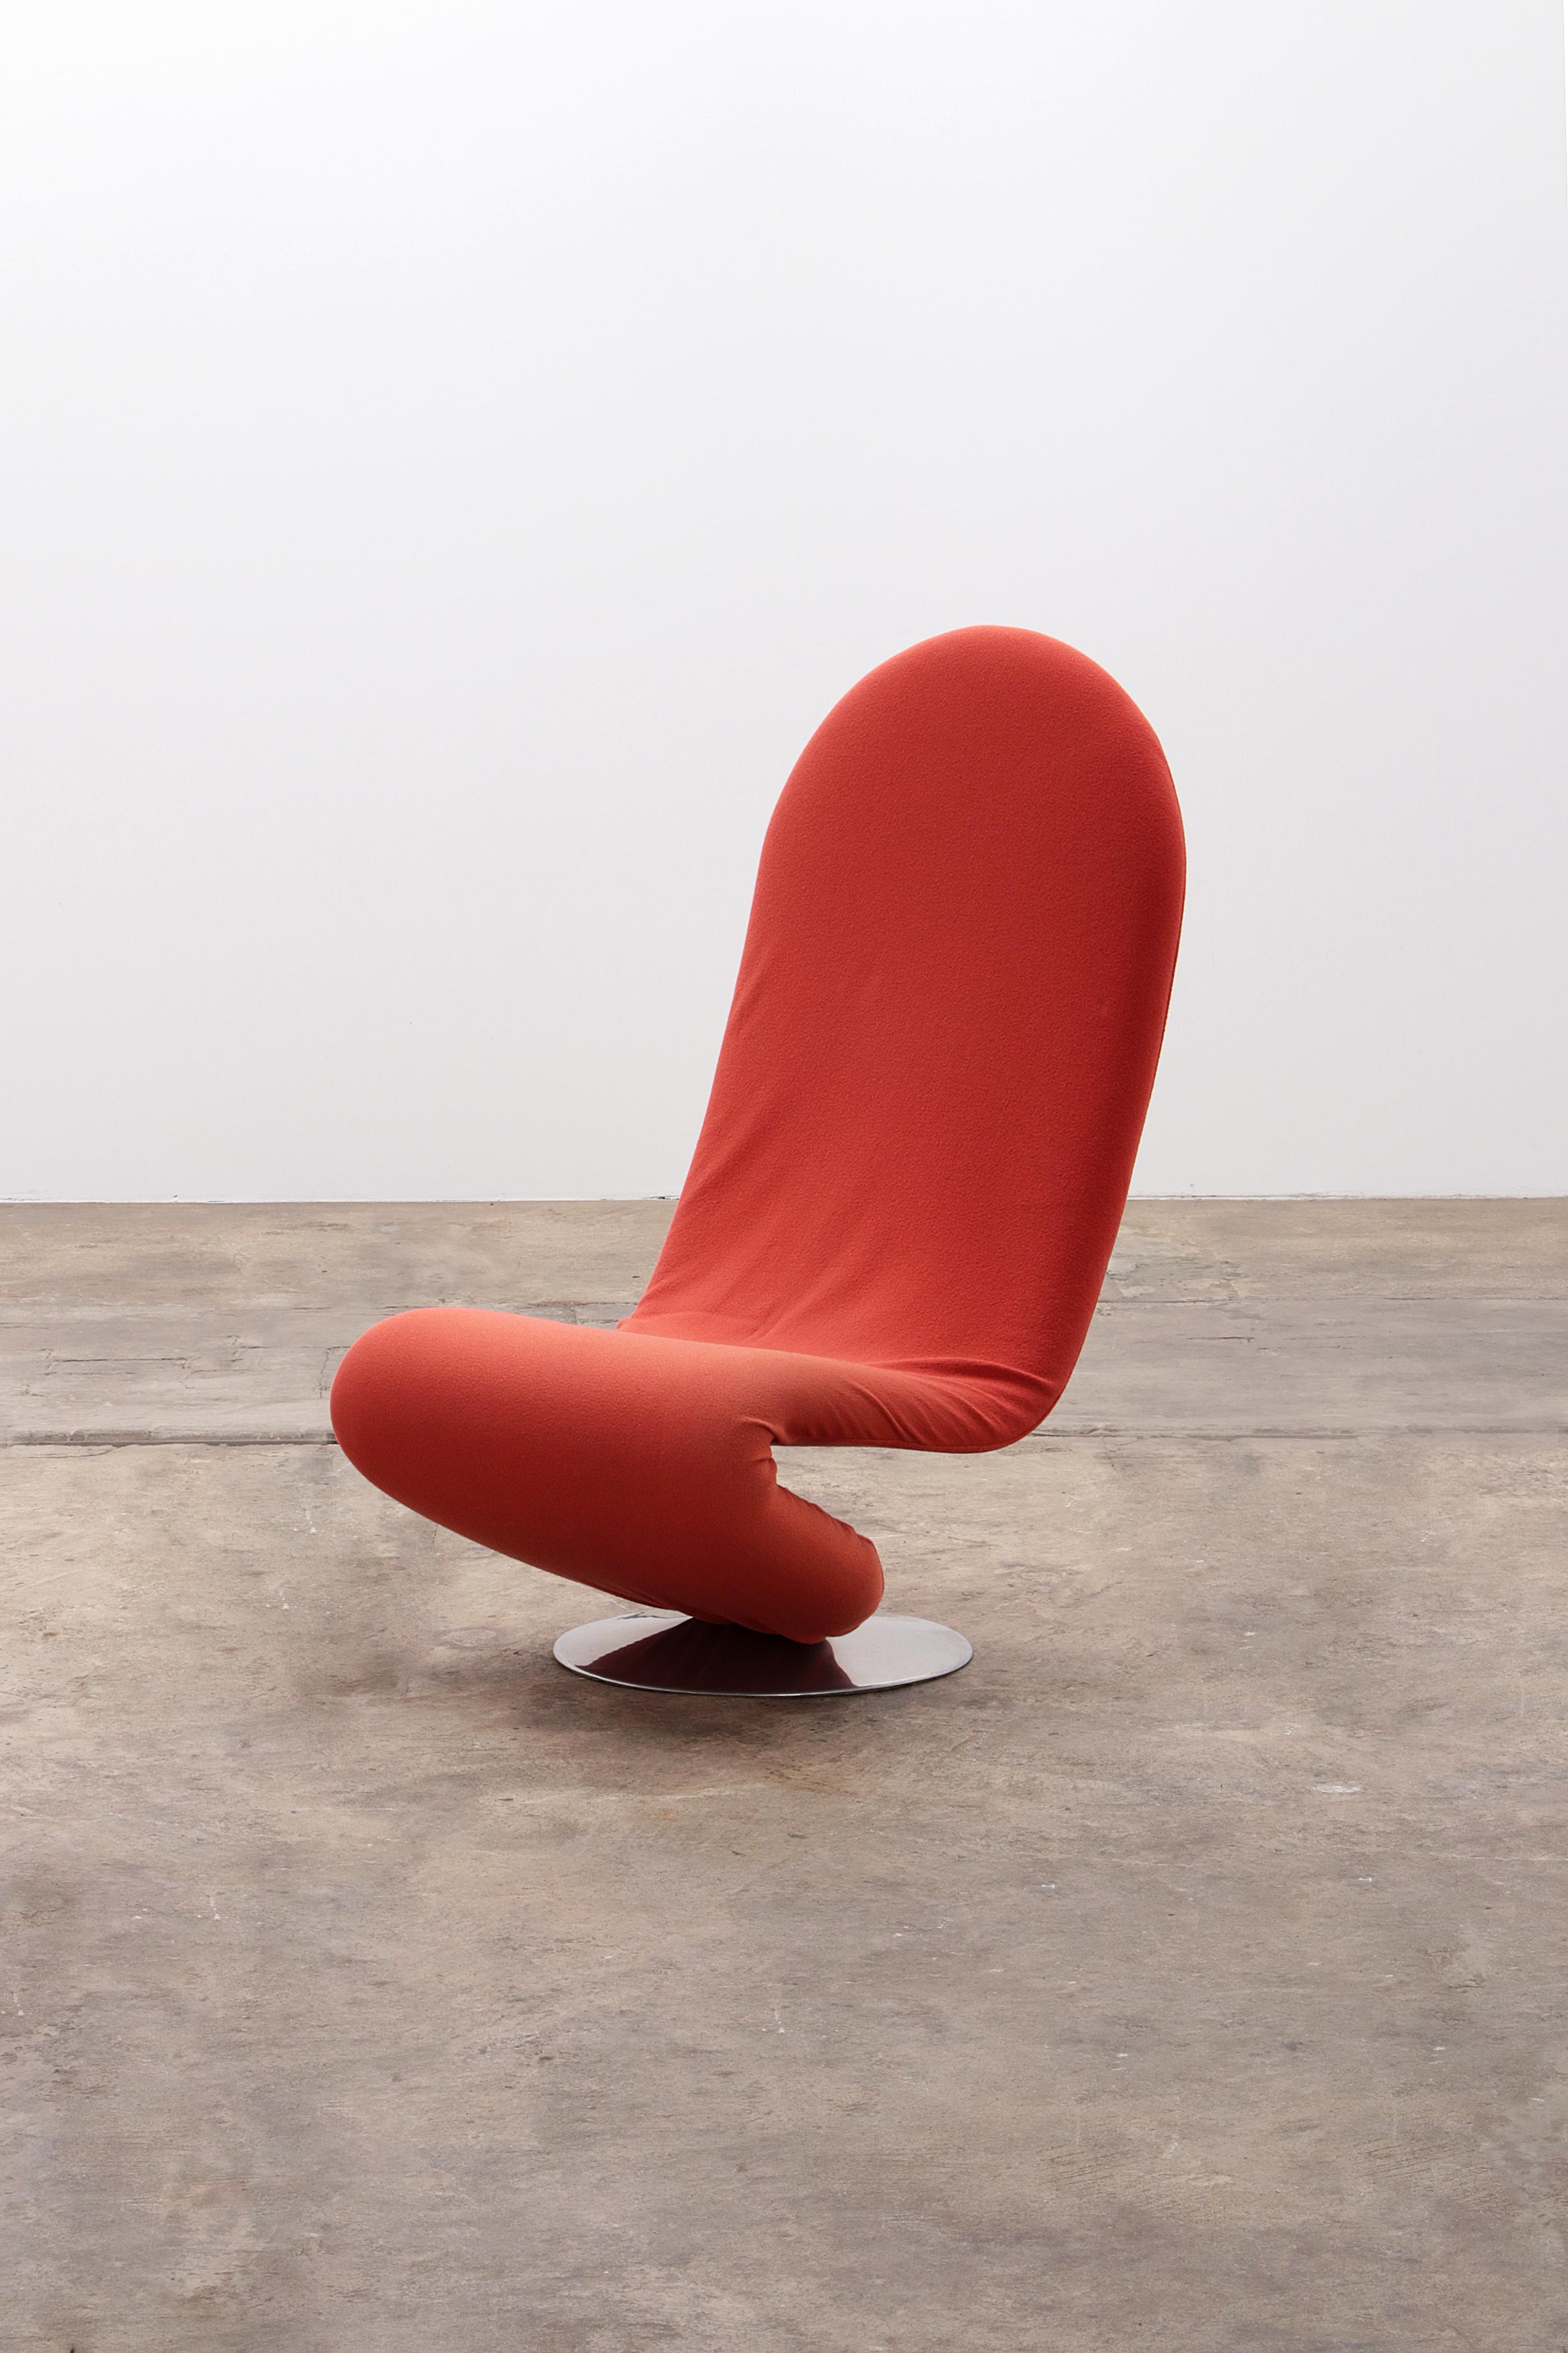 Entdecken Sie den kultigen Fritz Hansen 1-2-3 Chair, entworfen von dem legendären dänischen Designer Verner Panton. Dieses seltene Modell 'System 123' aus dem Jahr 1973, das mit einem auffälligen rot-orangenen Stoff bezogen ist, ist ein wahres